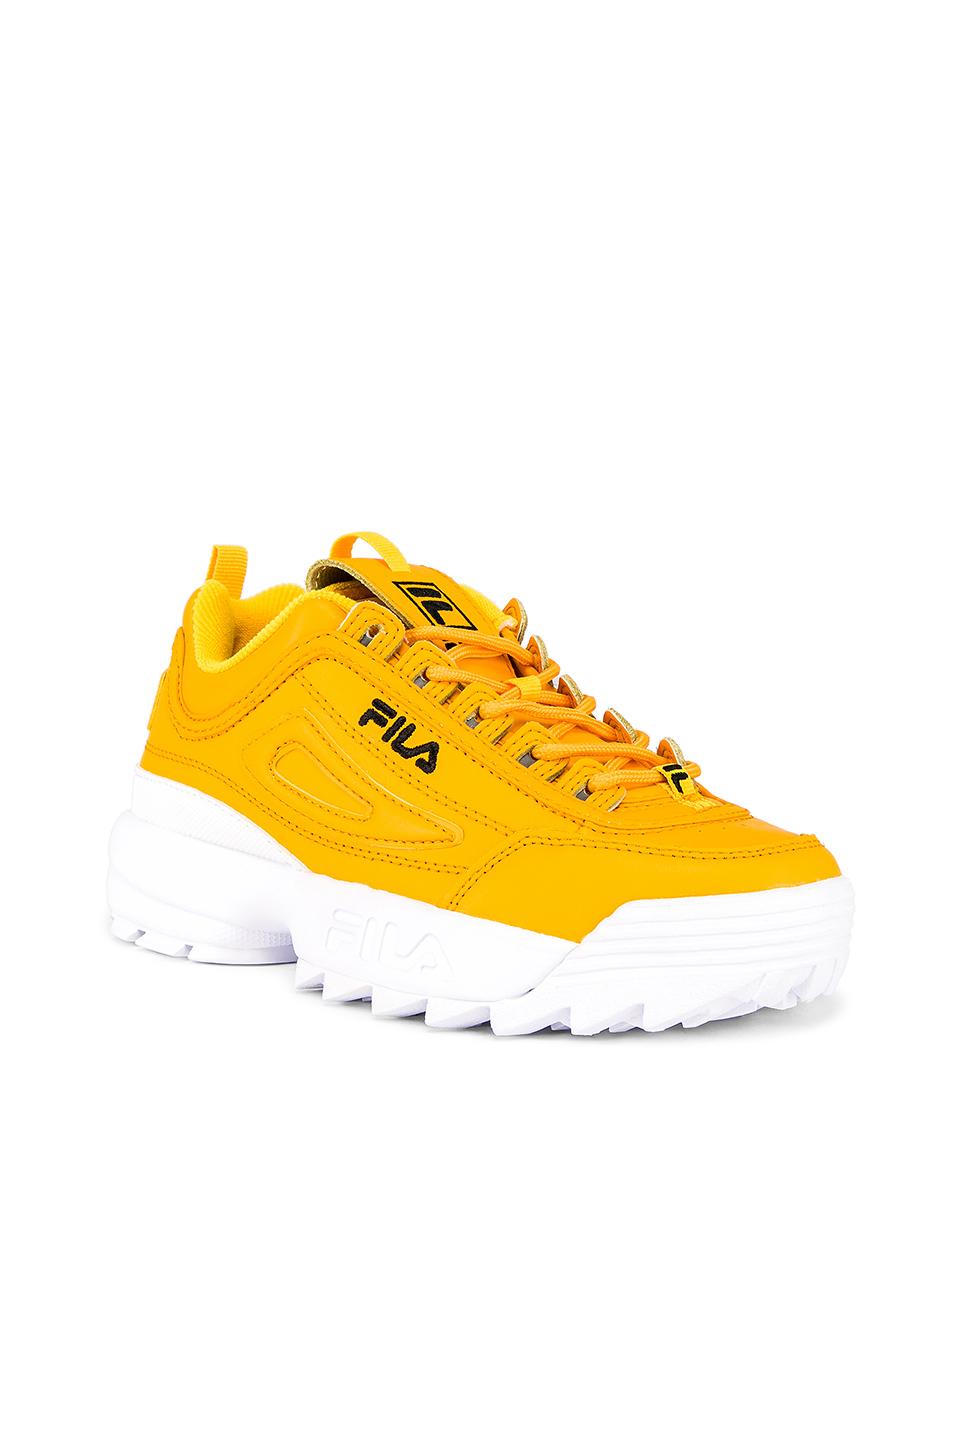 fila sneakers jaune